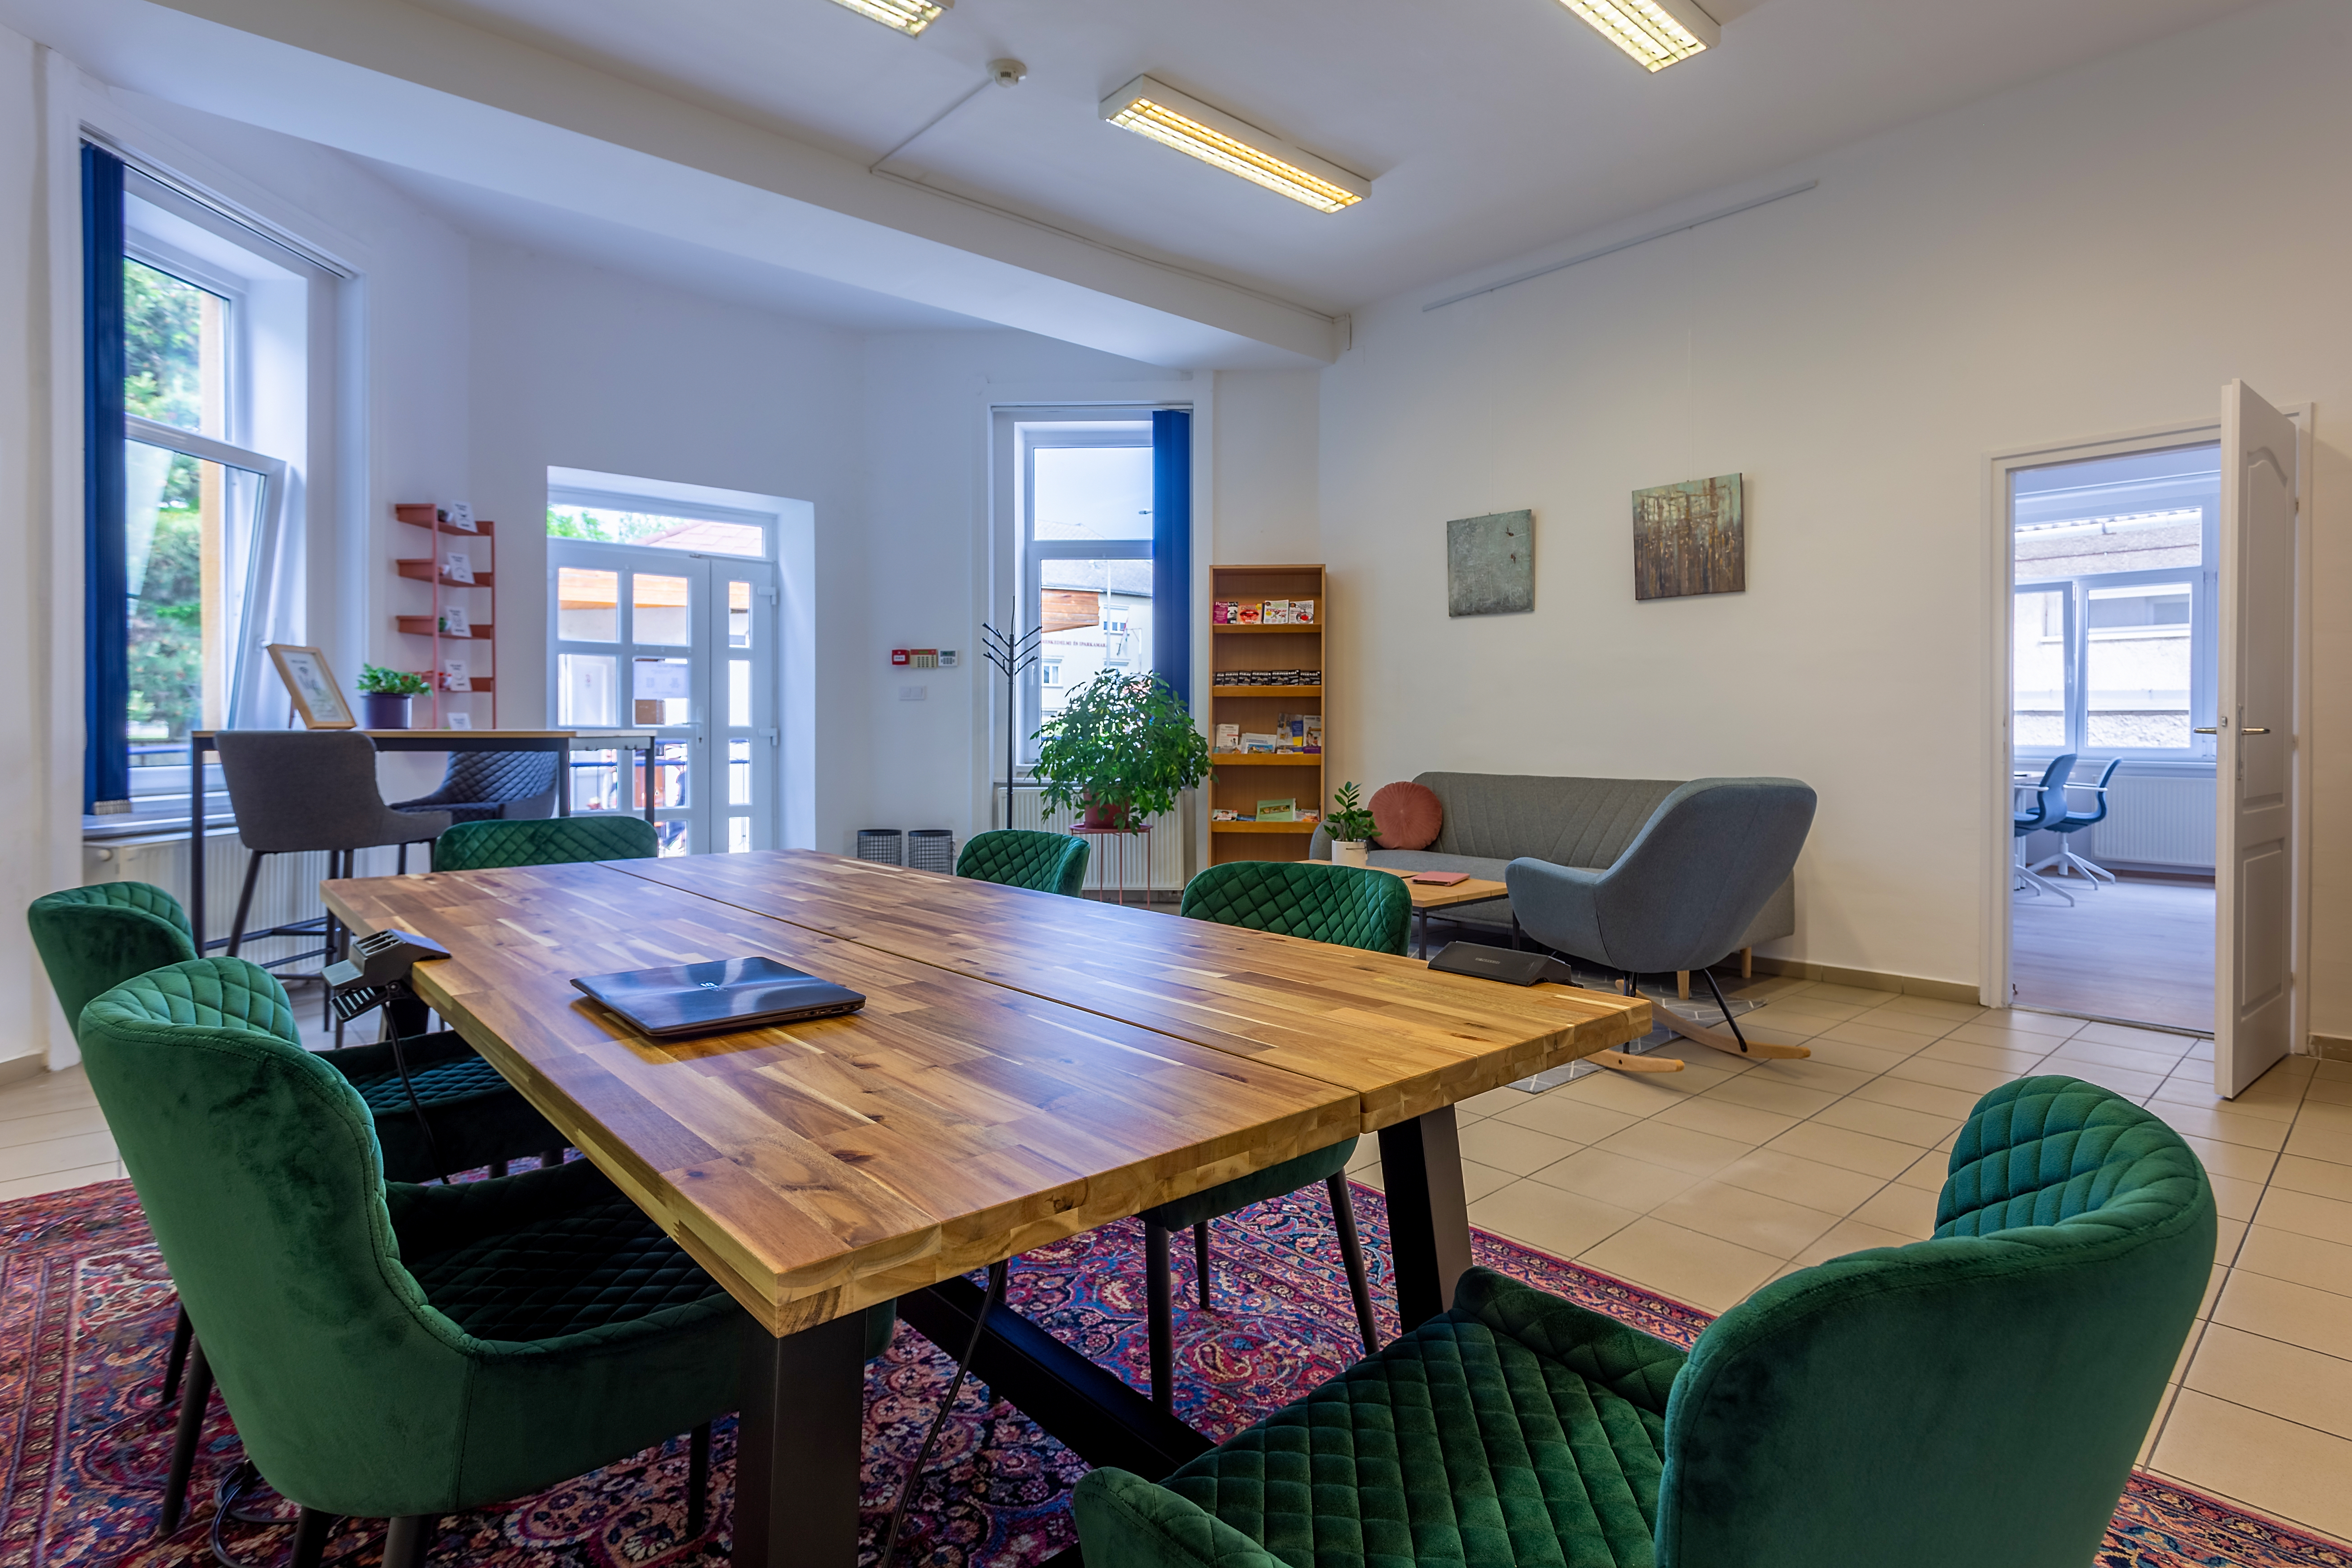 Újabb közösségi iroda nyílt a Balaton környékén